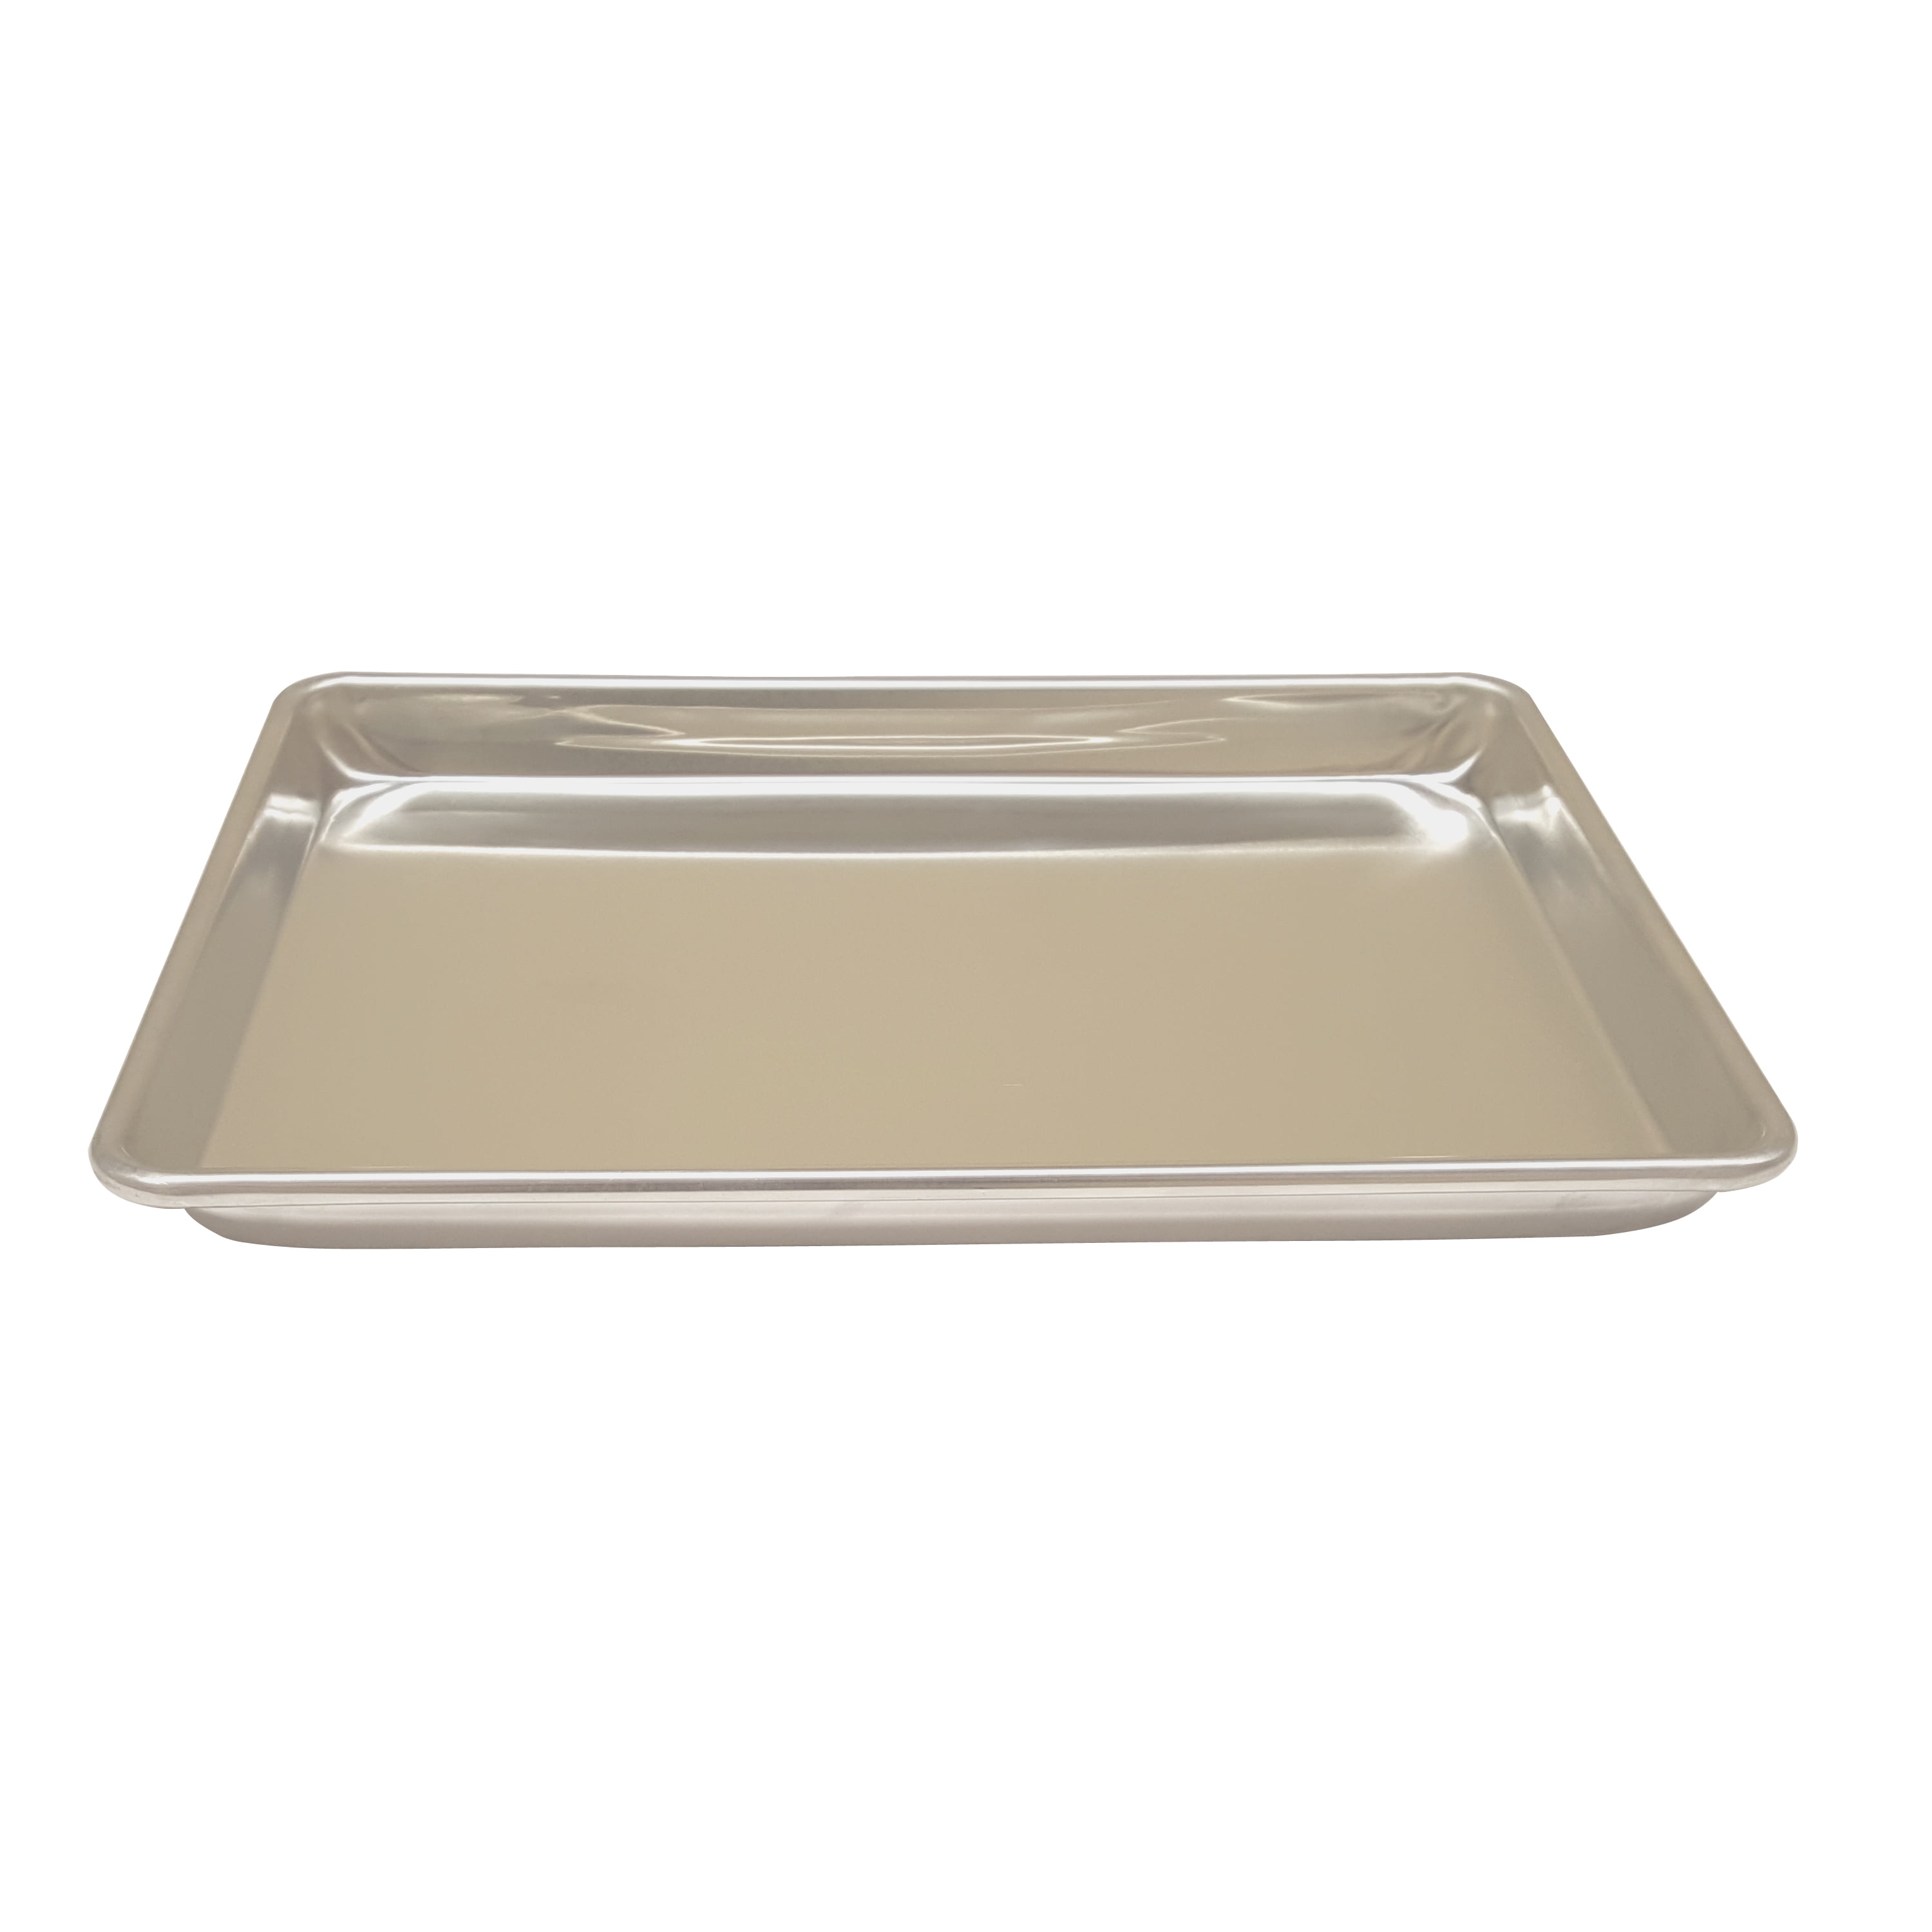 Large Aluminum Heavy-Duty Commercial Baking Pans. 26” x 18” x 1